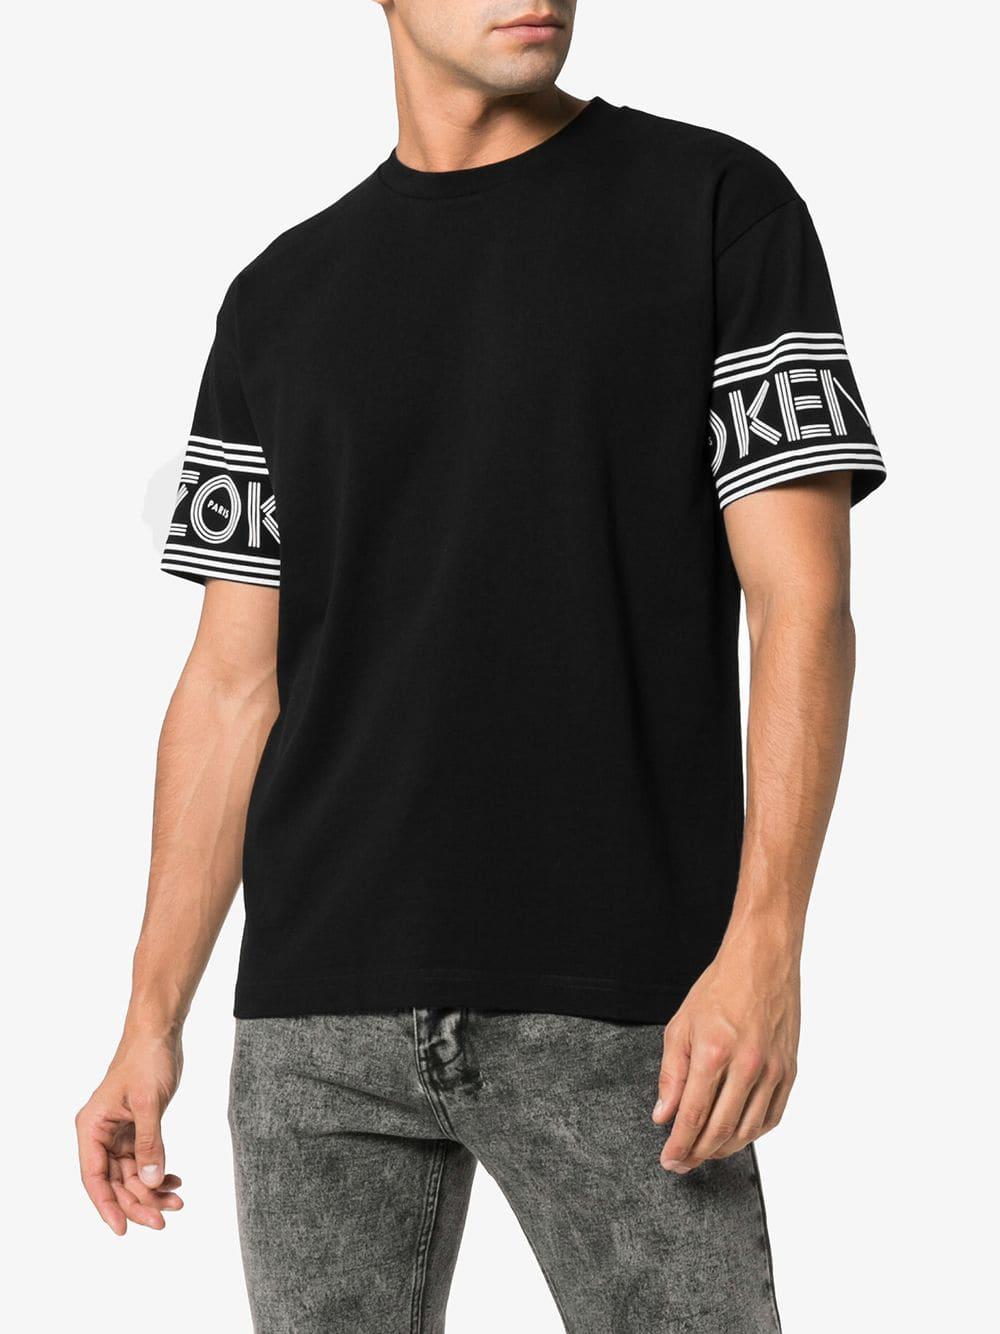 kenzo shirt black